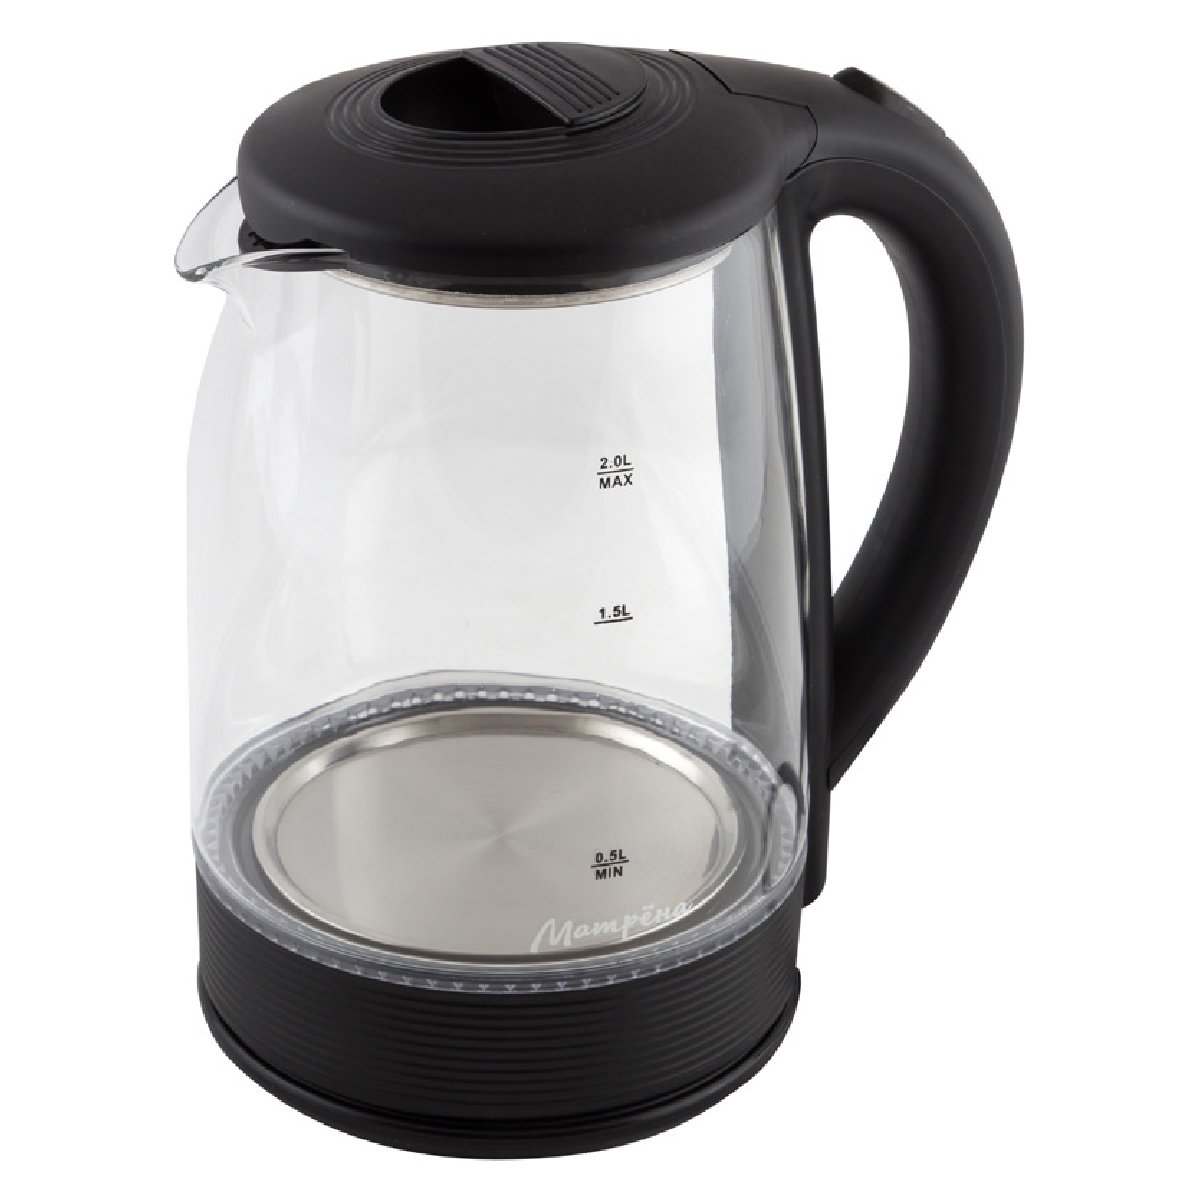 Матрена МА-009 чайник электрический дисковый, 2л, 1500Вт, стекло, черный(005418)